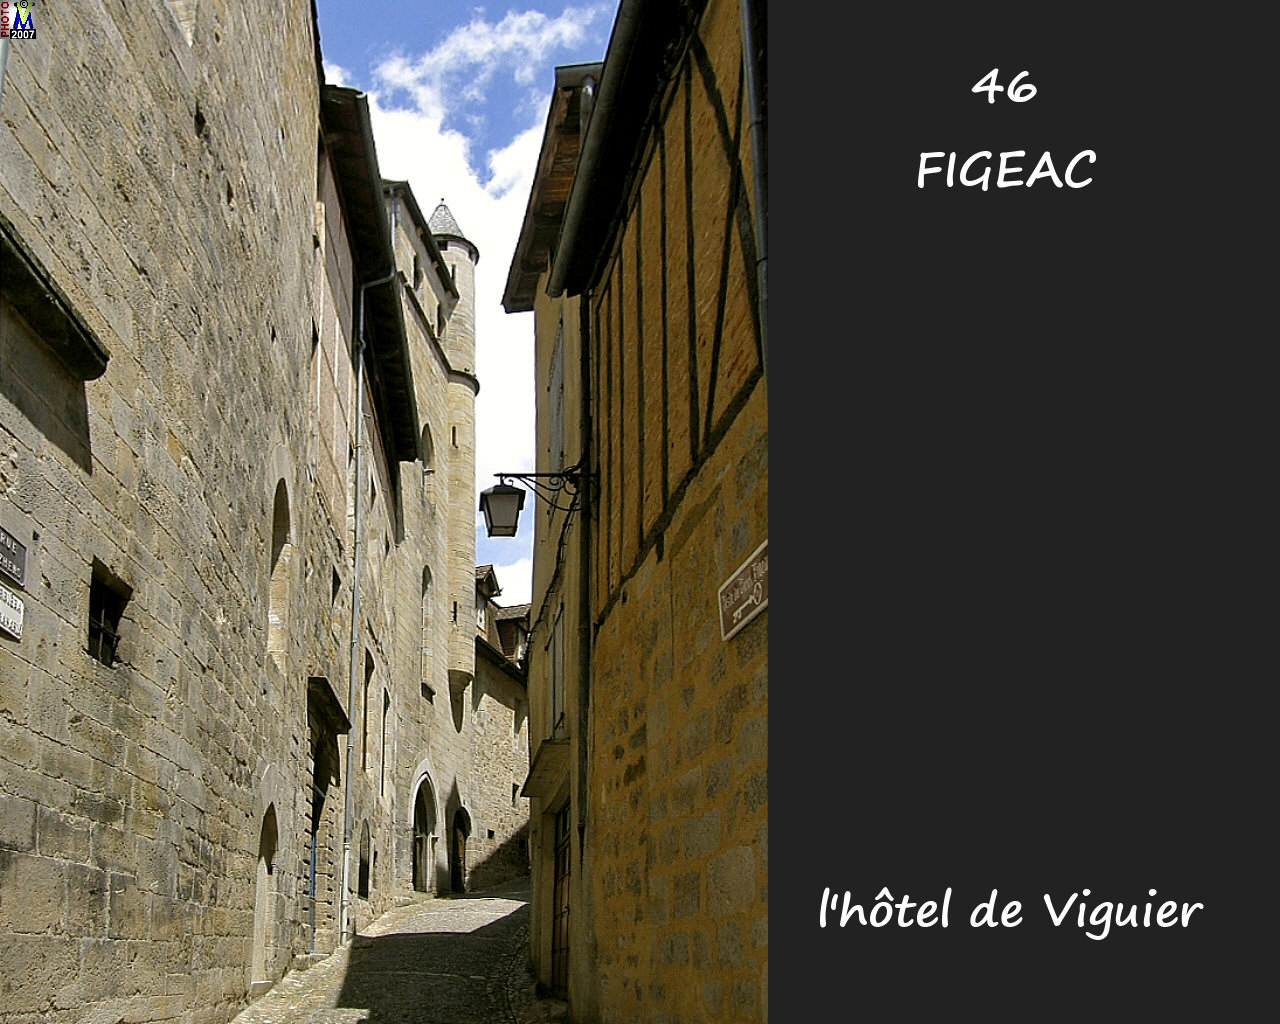 46FIGEAC_H-Viguier_104.jpg